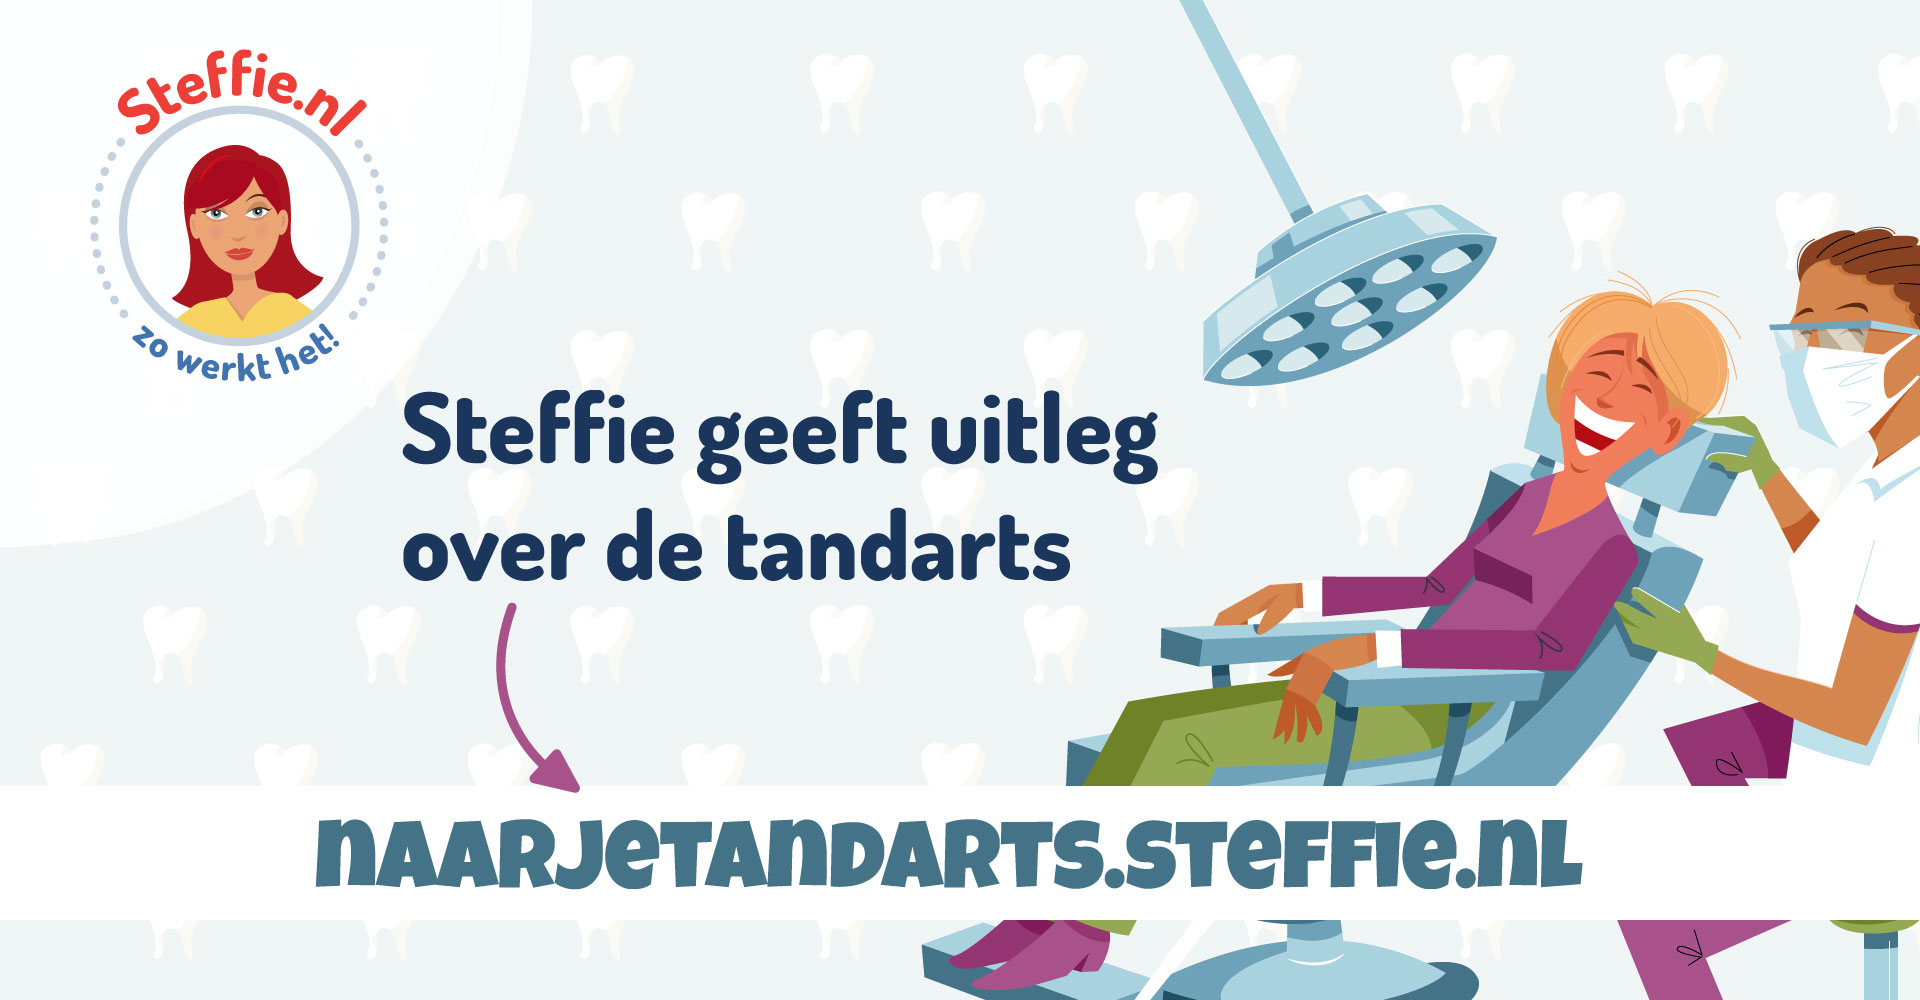 Naarjetandarts.steffie.nl